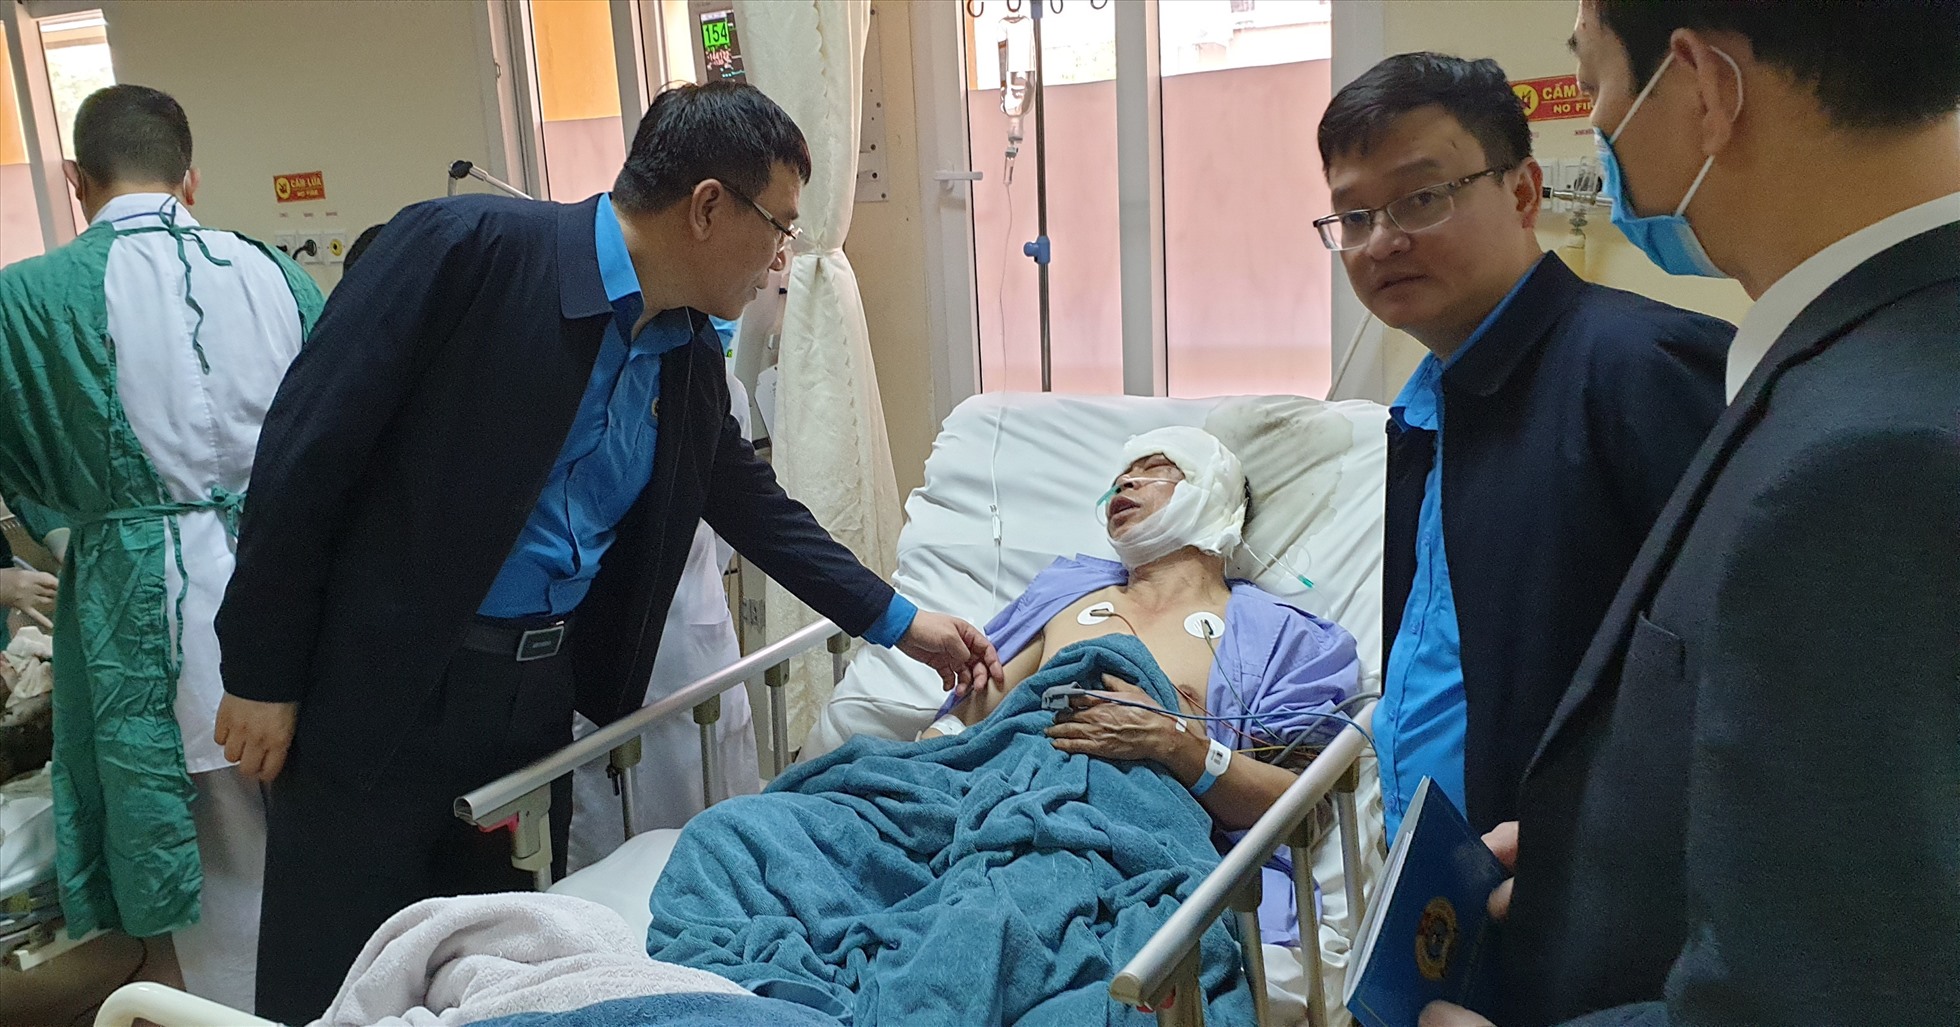 Thông tin MỚI về vụ tàu đang sửa chữa phát nổ ở Quảng Ninh khiến 8 công nhân bị bỏng - Ảnh 1